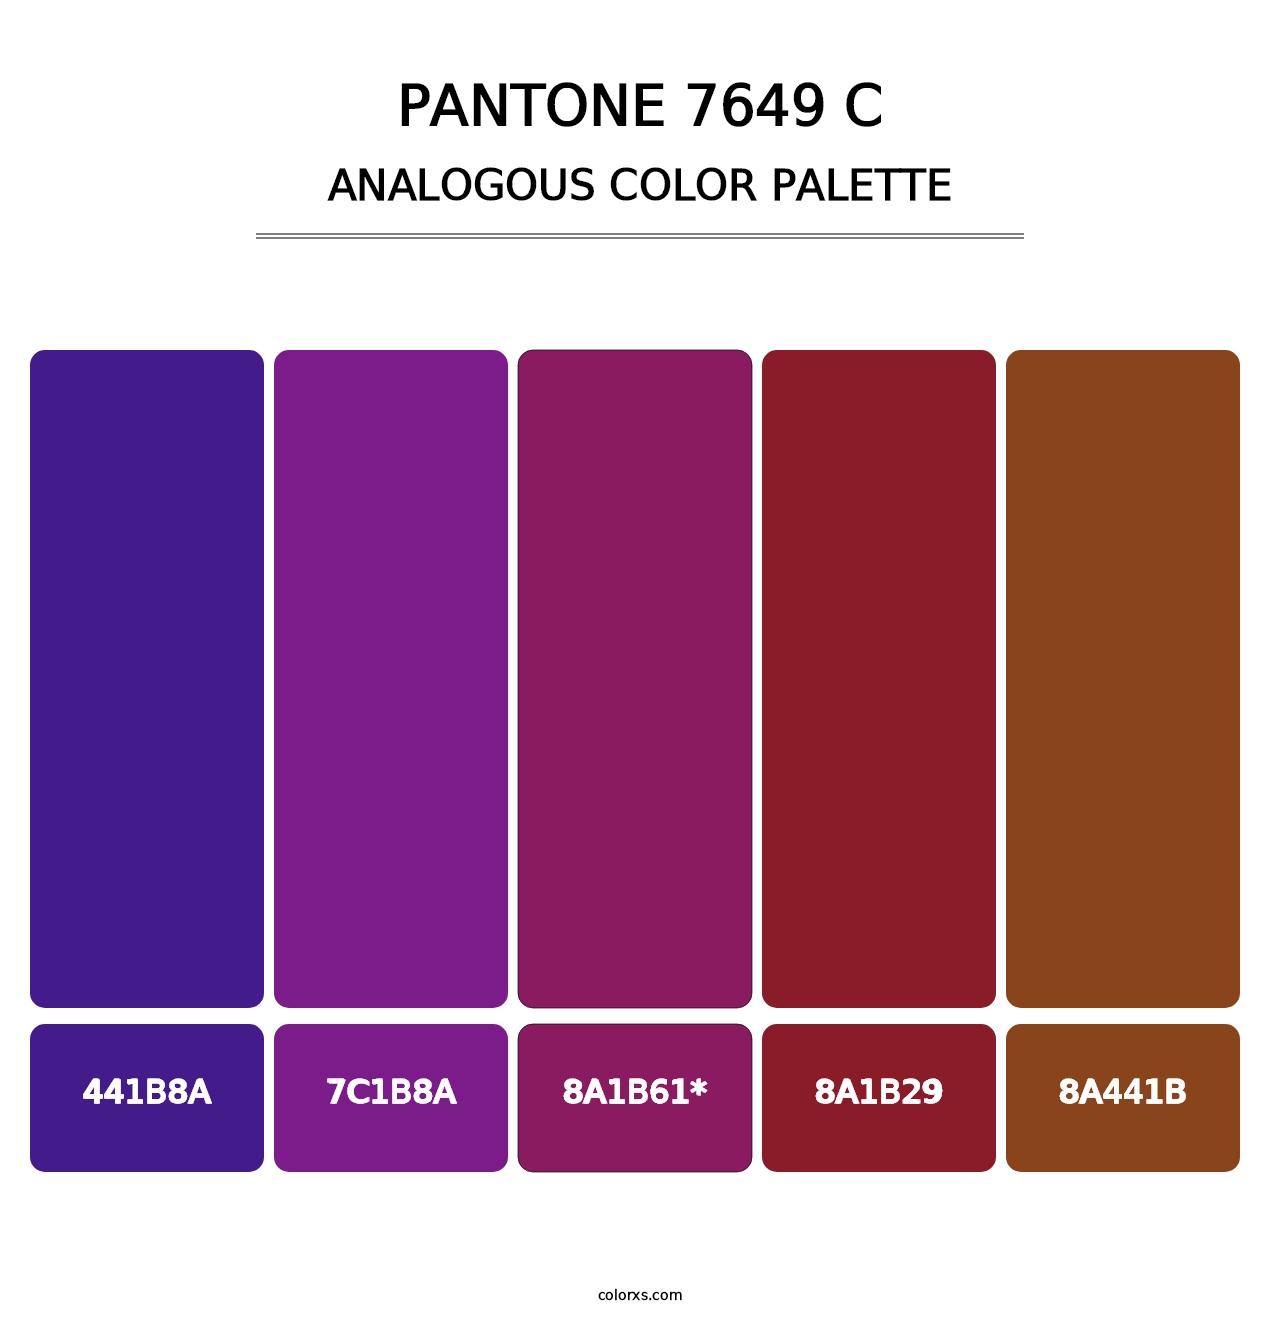 PANTONE 7649 C - Analogous Color Palette